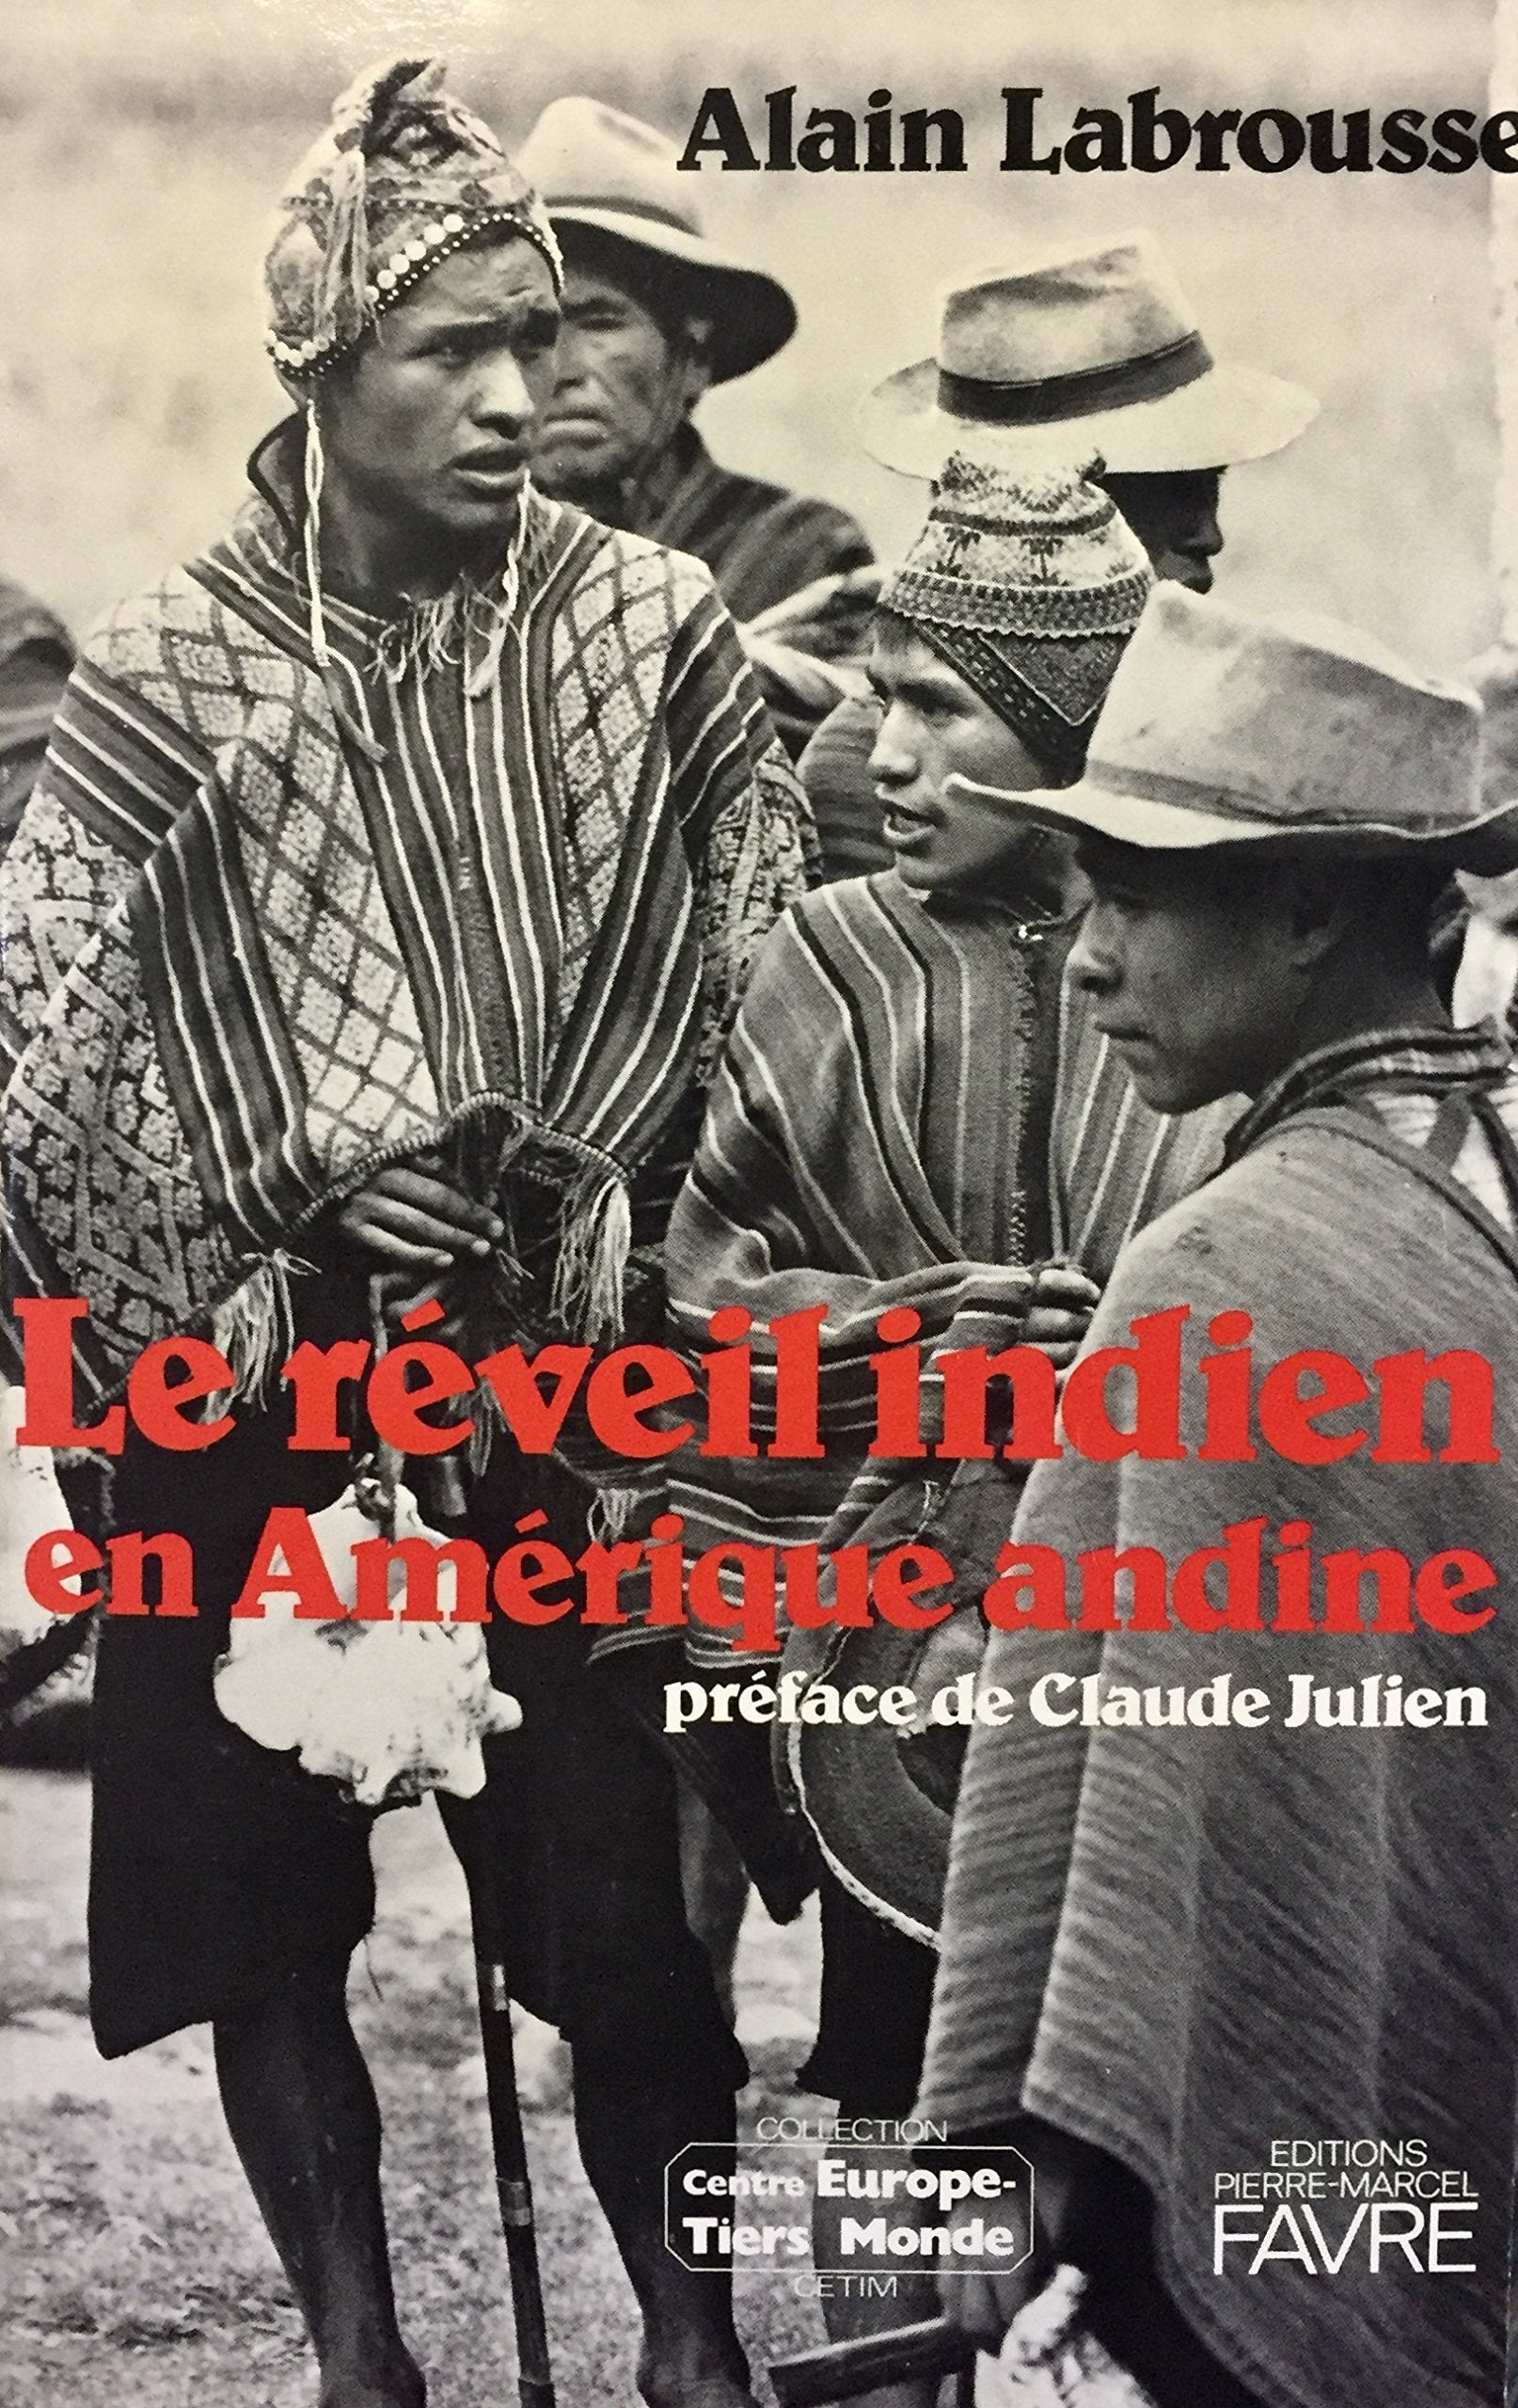 Livre ISBN 2828901858 Le réveil indien en Amérique andine (Alain Labrousse)